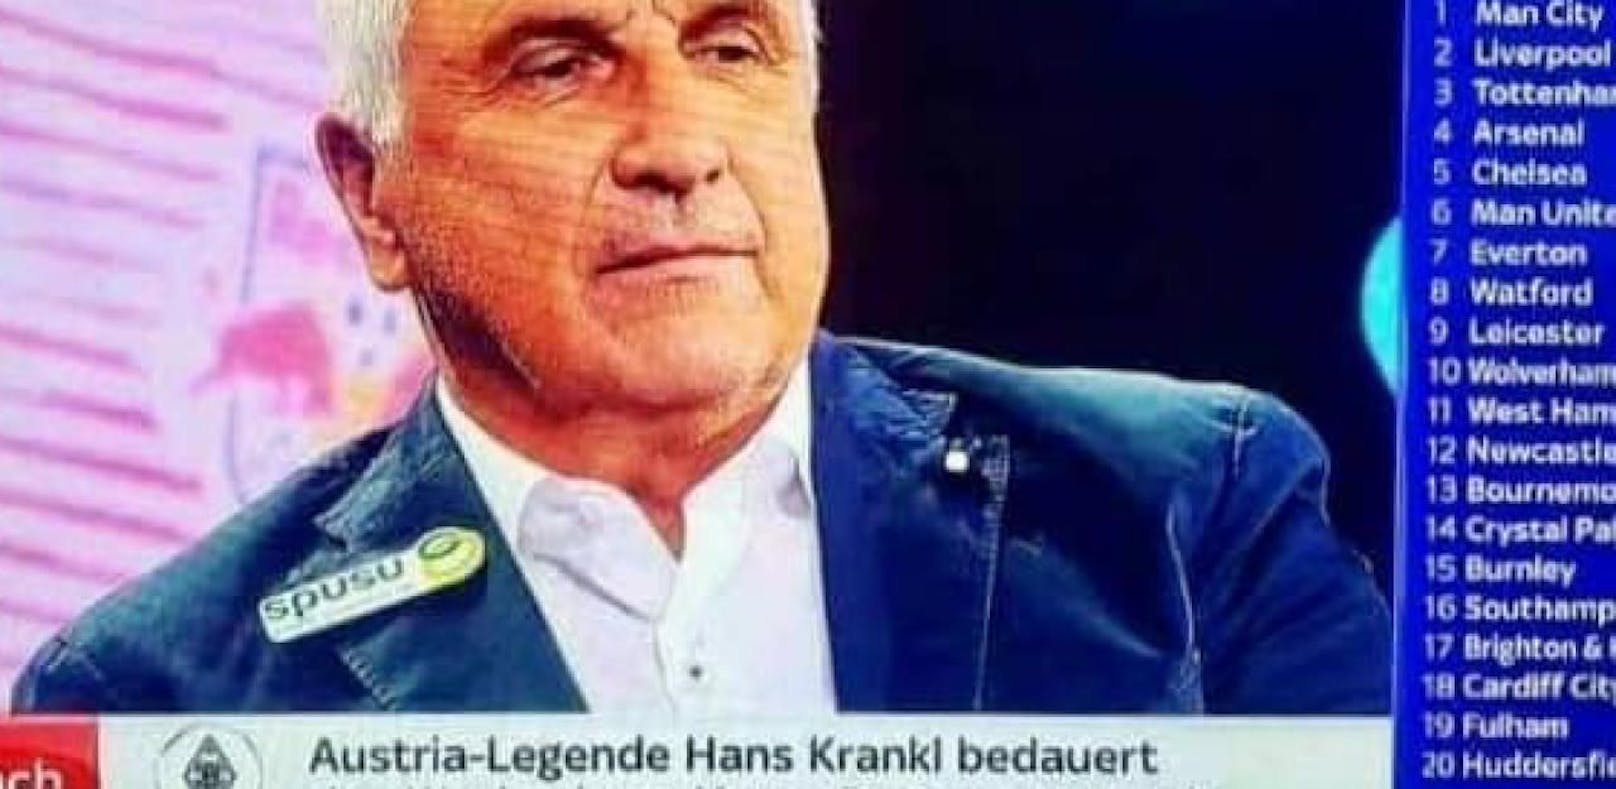 Hans Krankl wurde bei Sky Sport News in einer Einblendung zur &quot;Austria-Legende&quot;. Bild: Screenshot Sky Sport News